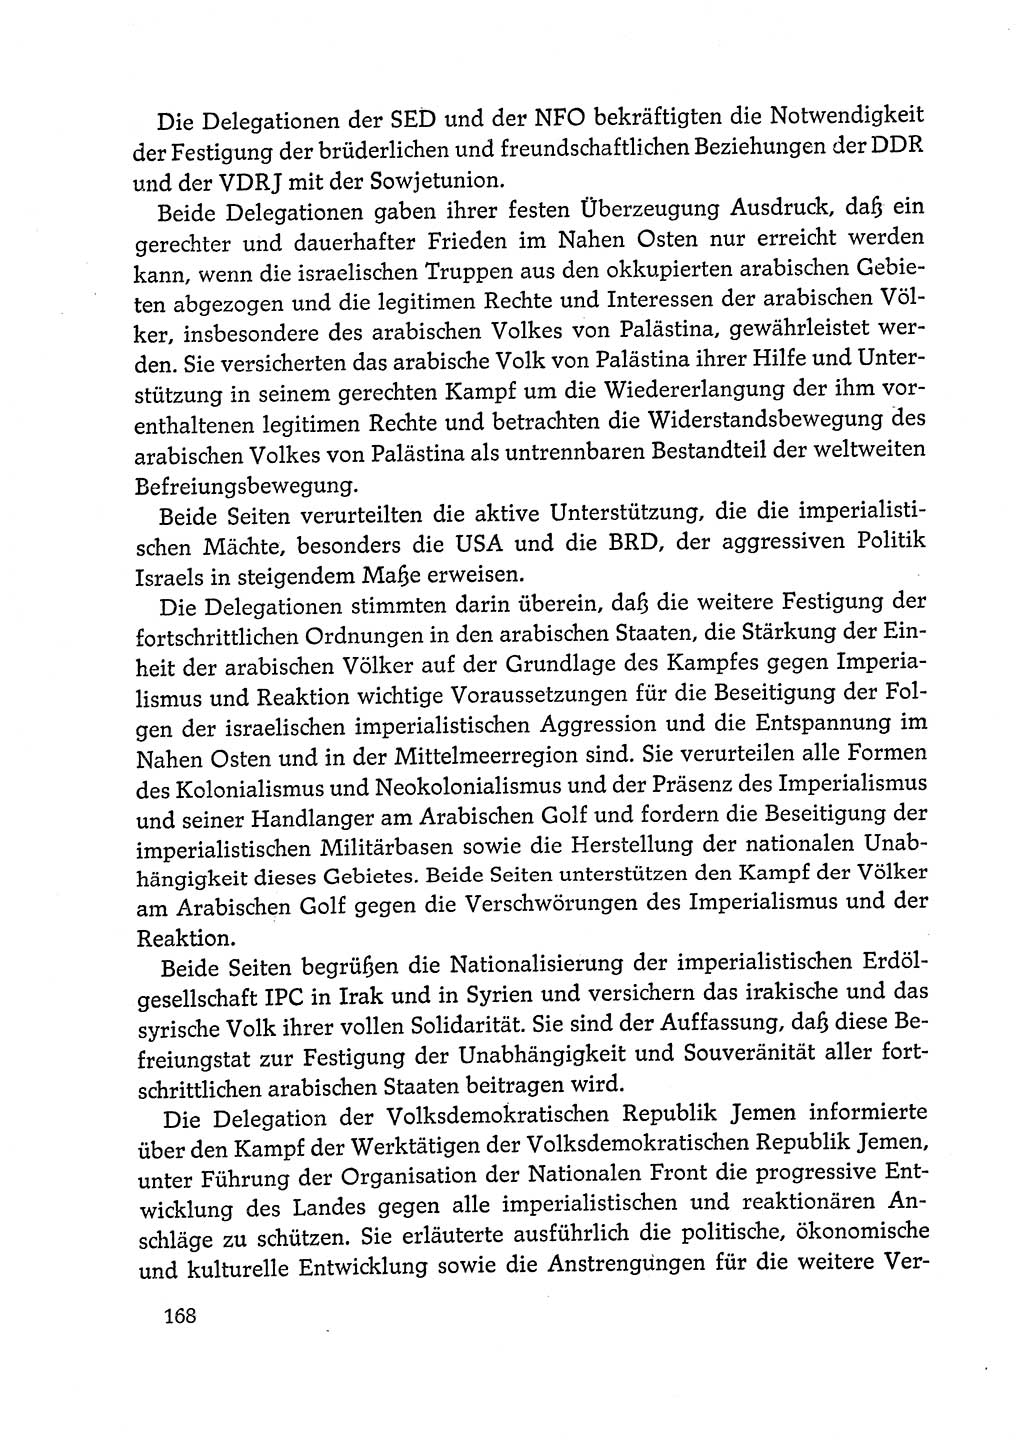 Dokumente der Sozialistischen Einheitspartei Deutschlands (SED) [Deutsche Demokratische Republik (DDR)] 1972-1973, Seite 168 (Dok. SED DDR 1972-1973, S. 168)